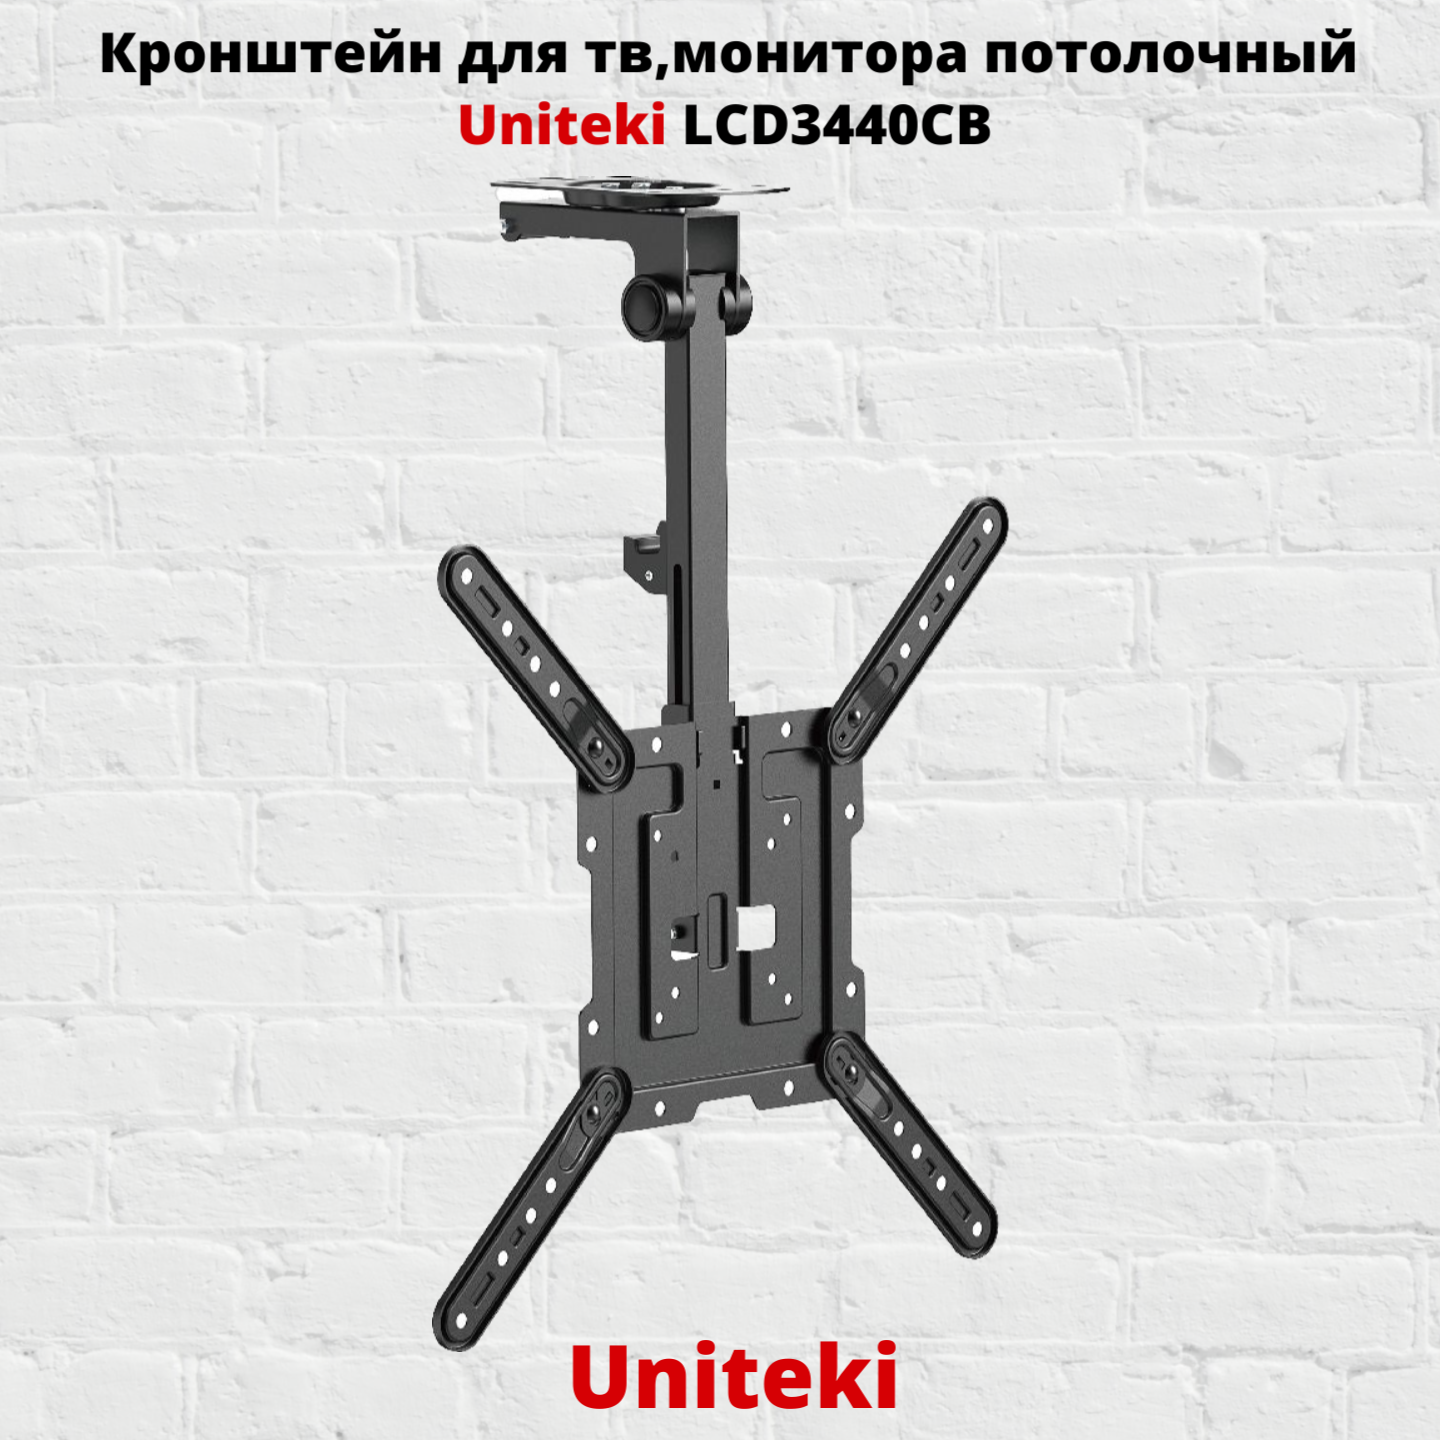 Наклонно-поворотный кронштейн для телевизора Uniteki LCD3440CB 23-54 черный, купить в Москве, цены в интернет-магазинах на Мегамаркет